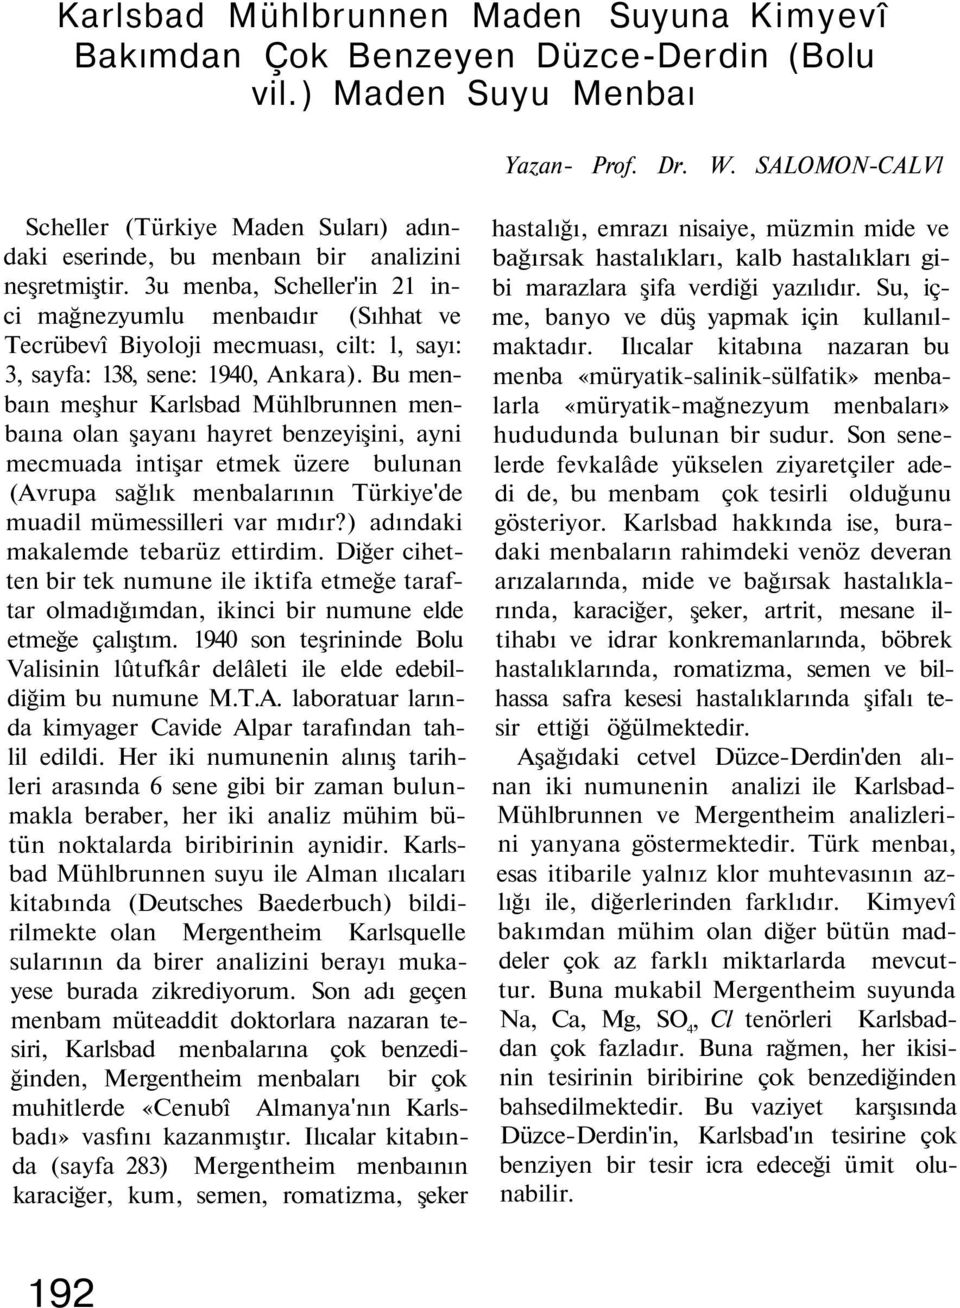 3u menba, Scheller'in 21 inci mağnezyumlu menbaıdır (Sıhhat ve Tecrübevî Biyoloji mecmuası, cilt: l, sayı: 3, sayfa: 138, sene: 1940, Ankara).